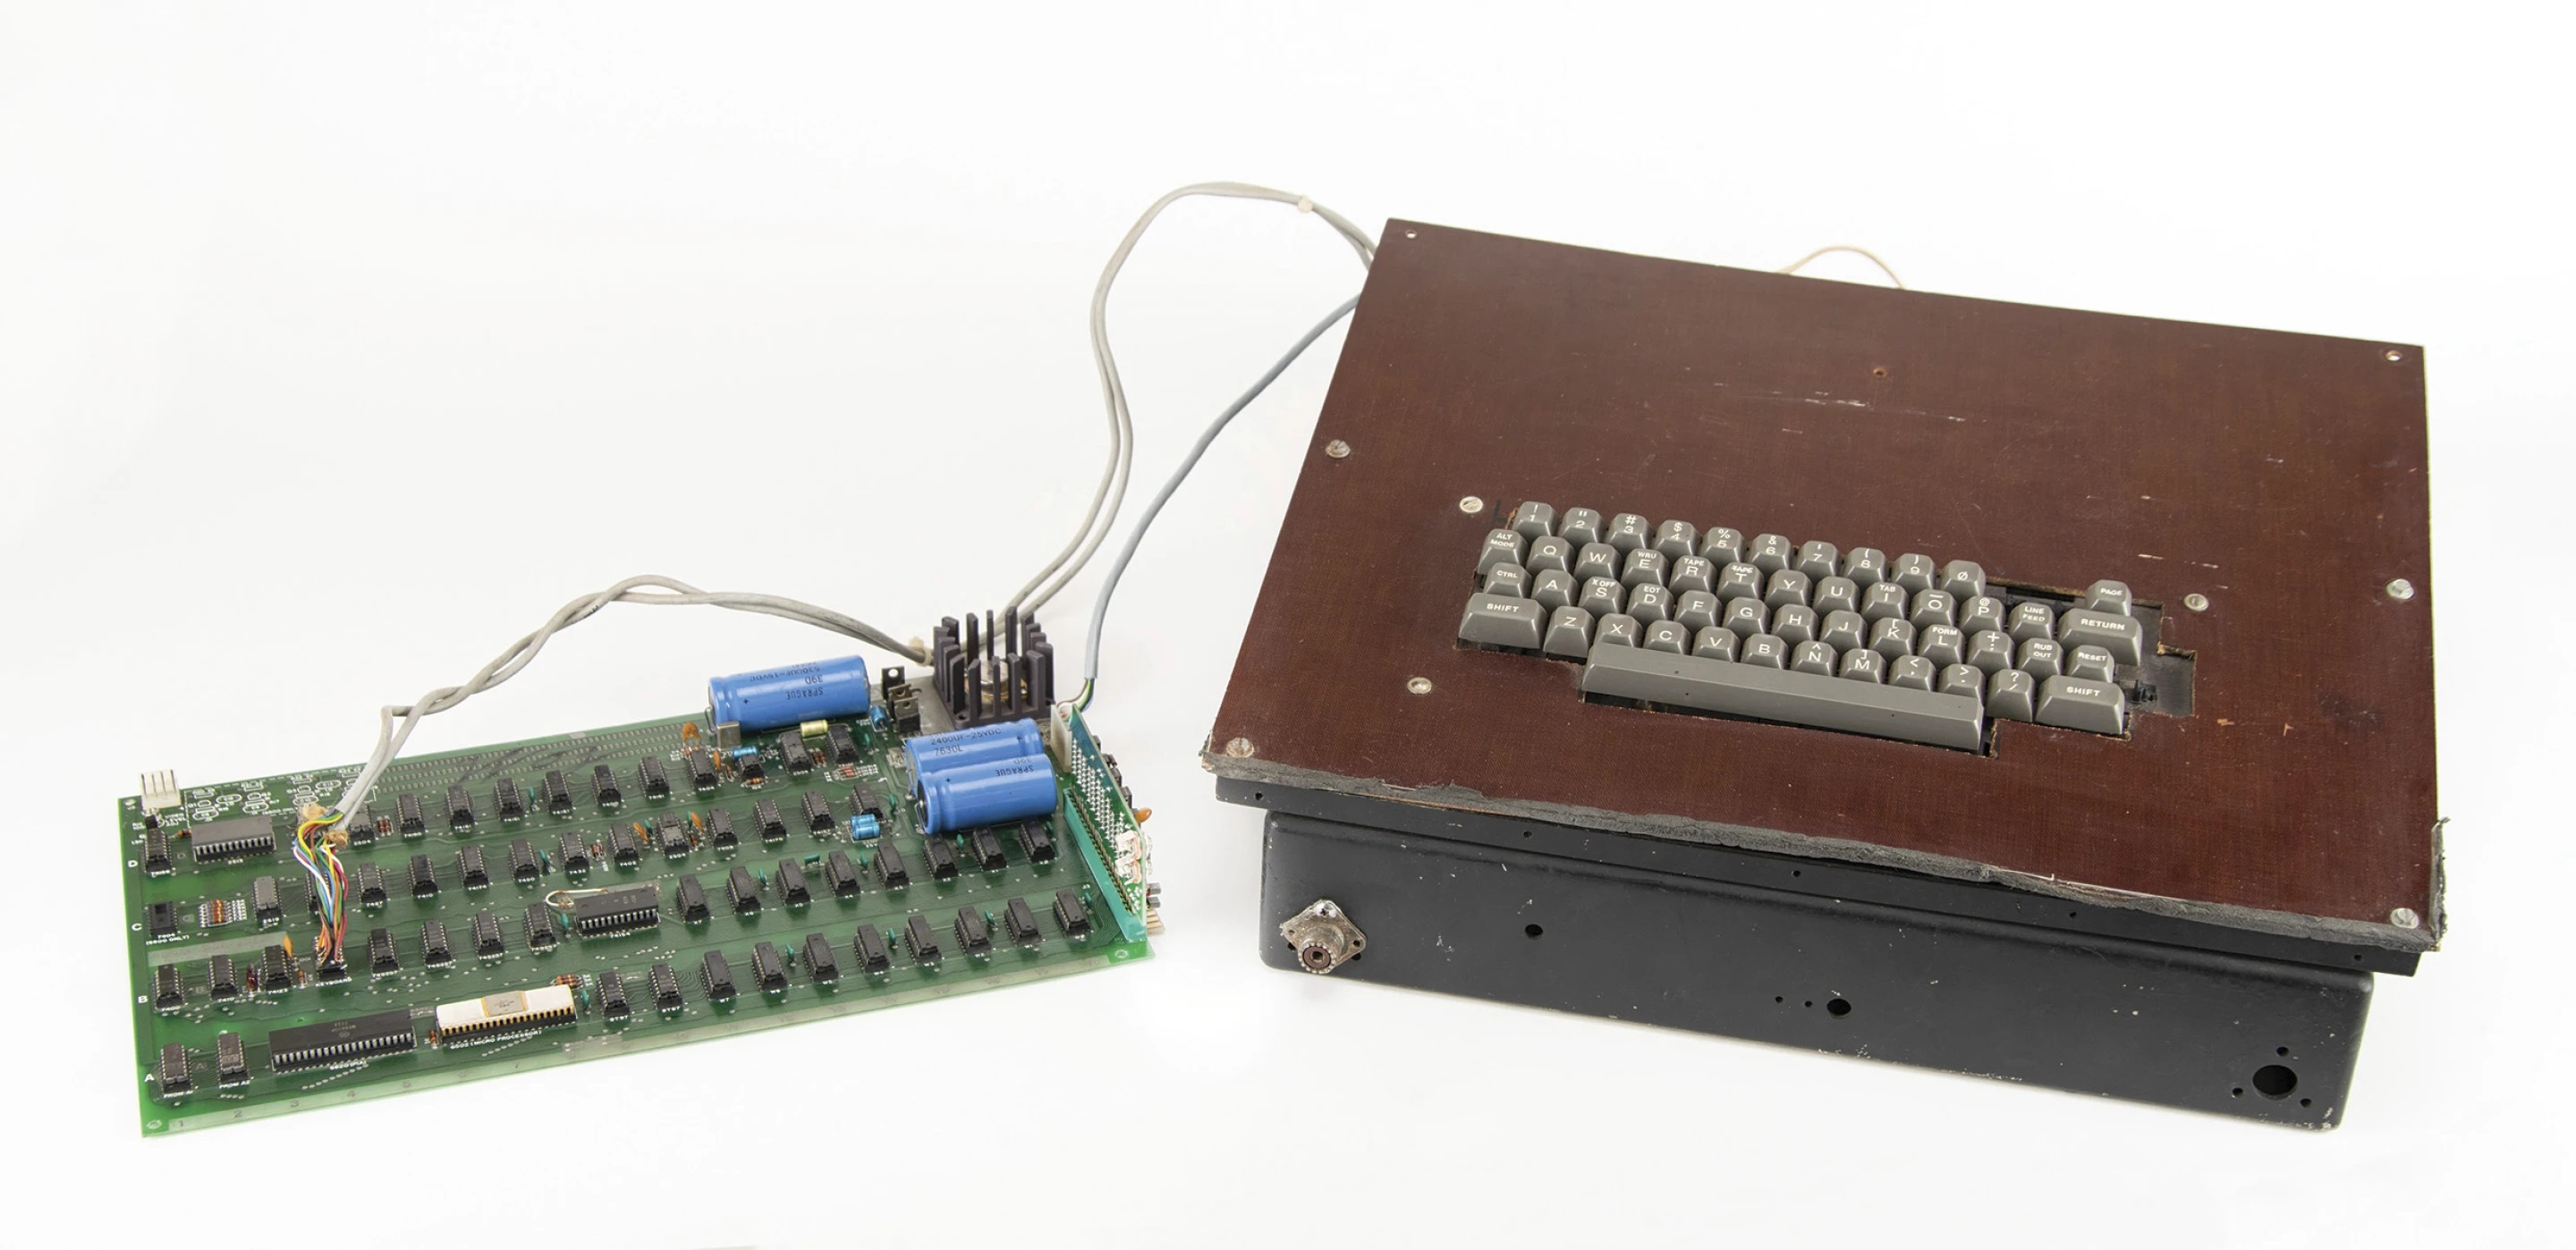 Le premier ordinateur d'Apple, sorti dans les années 70, est vendu aux enchères - il devrait être vendu pour 200 000 dollars.